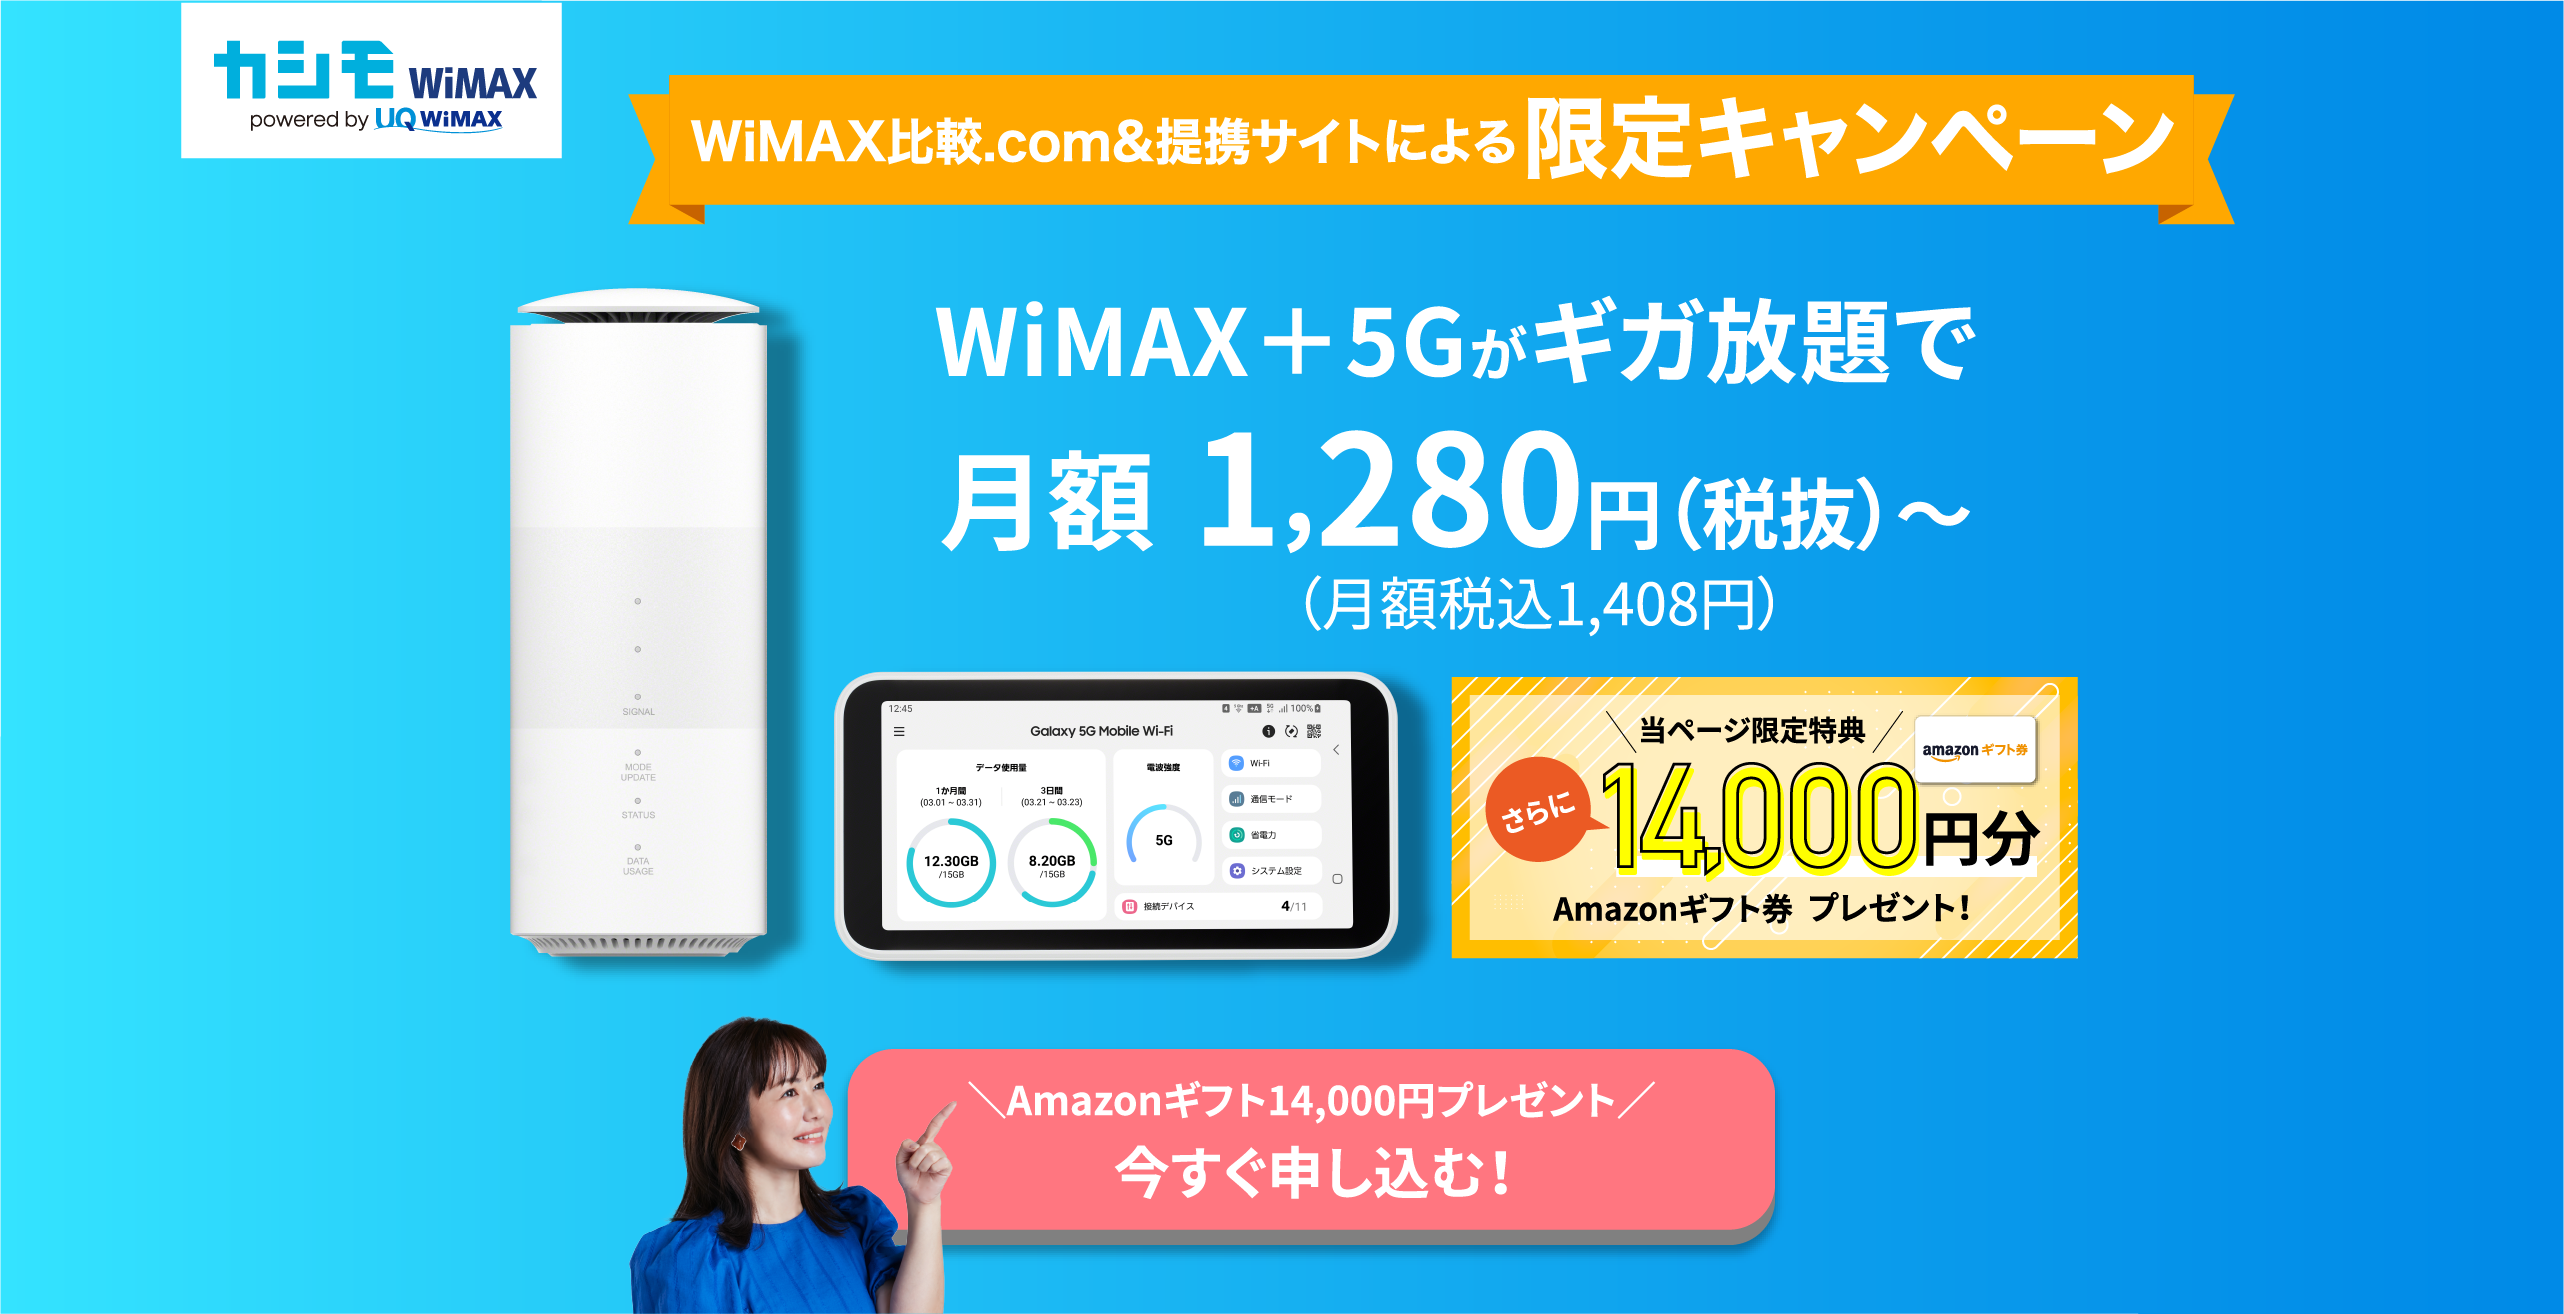 WiMAX比較.com&提携サイトによる限定campaign【選べるデジタルギフト5000円分present】Amazonギフト券、iTunesギフトカード、Google Playギフトコードなど